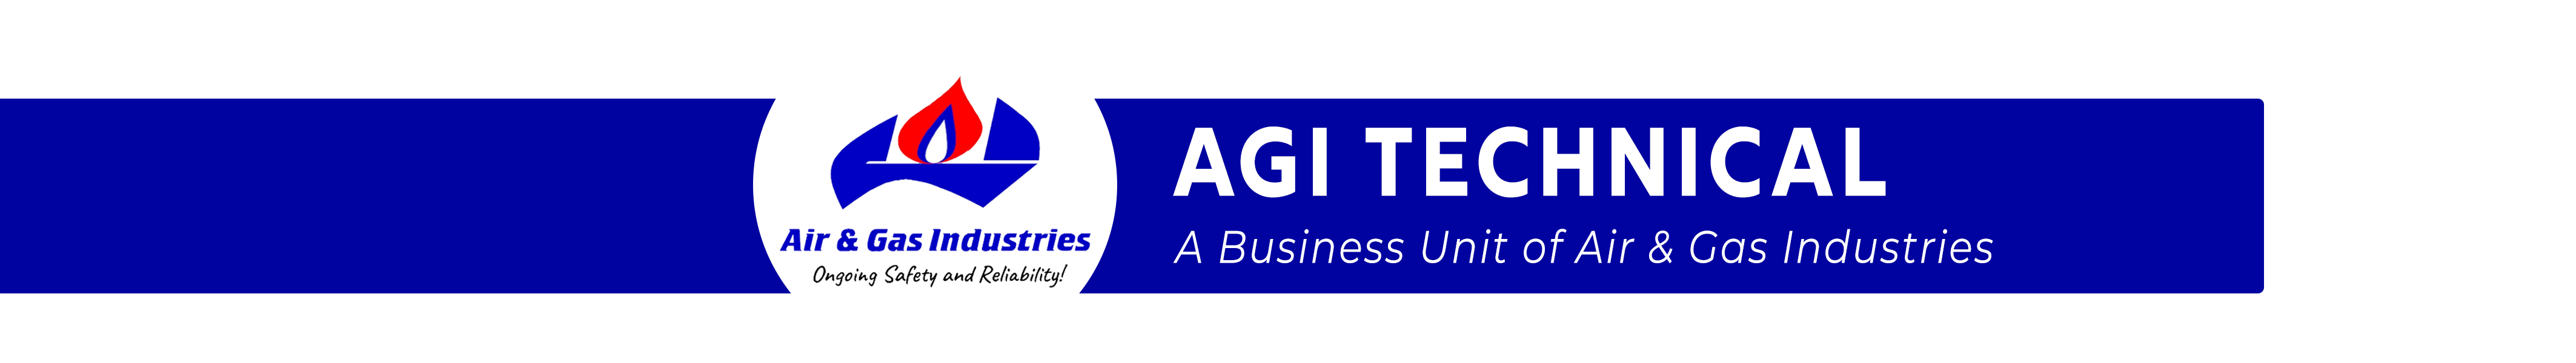 AGI Technical